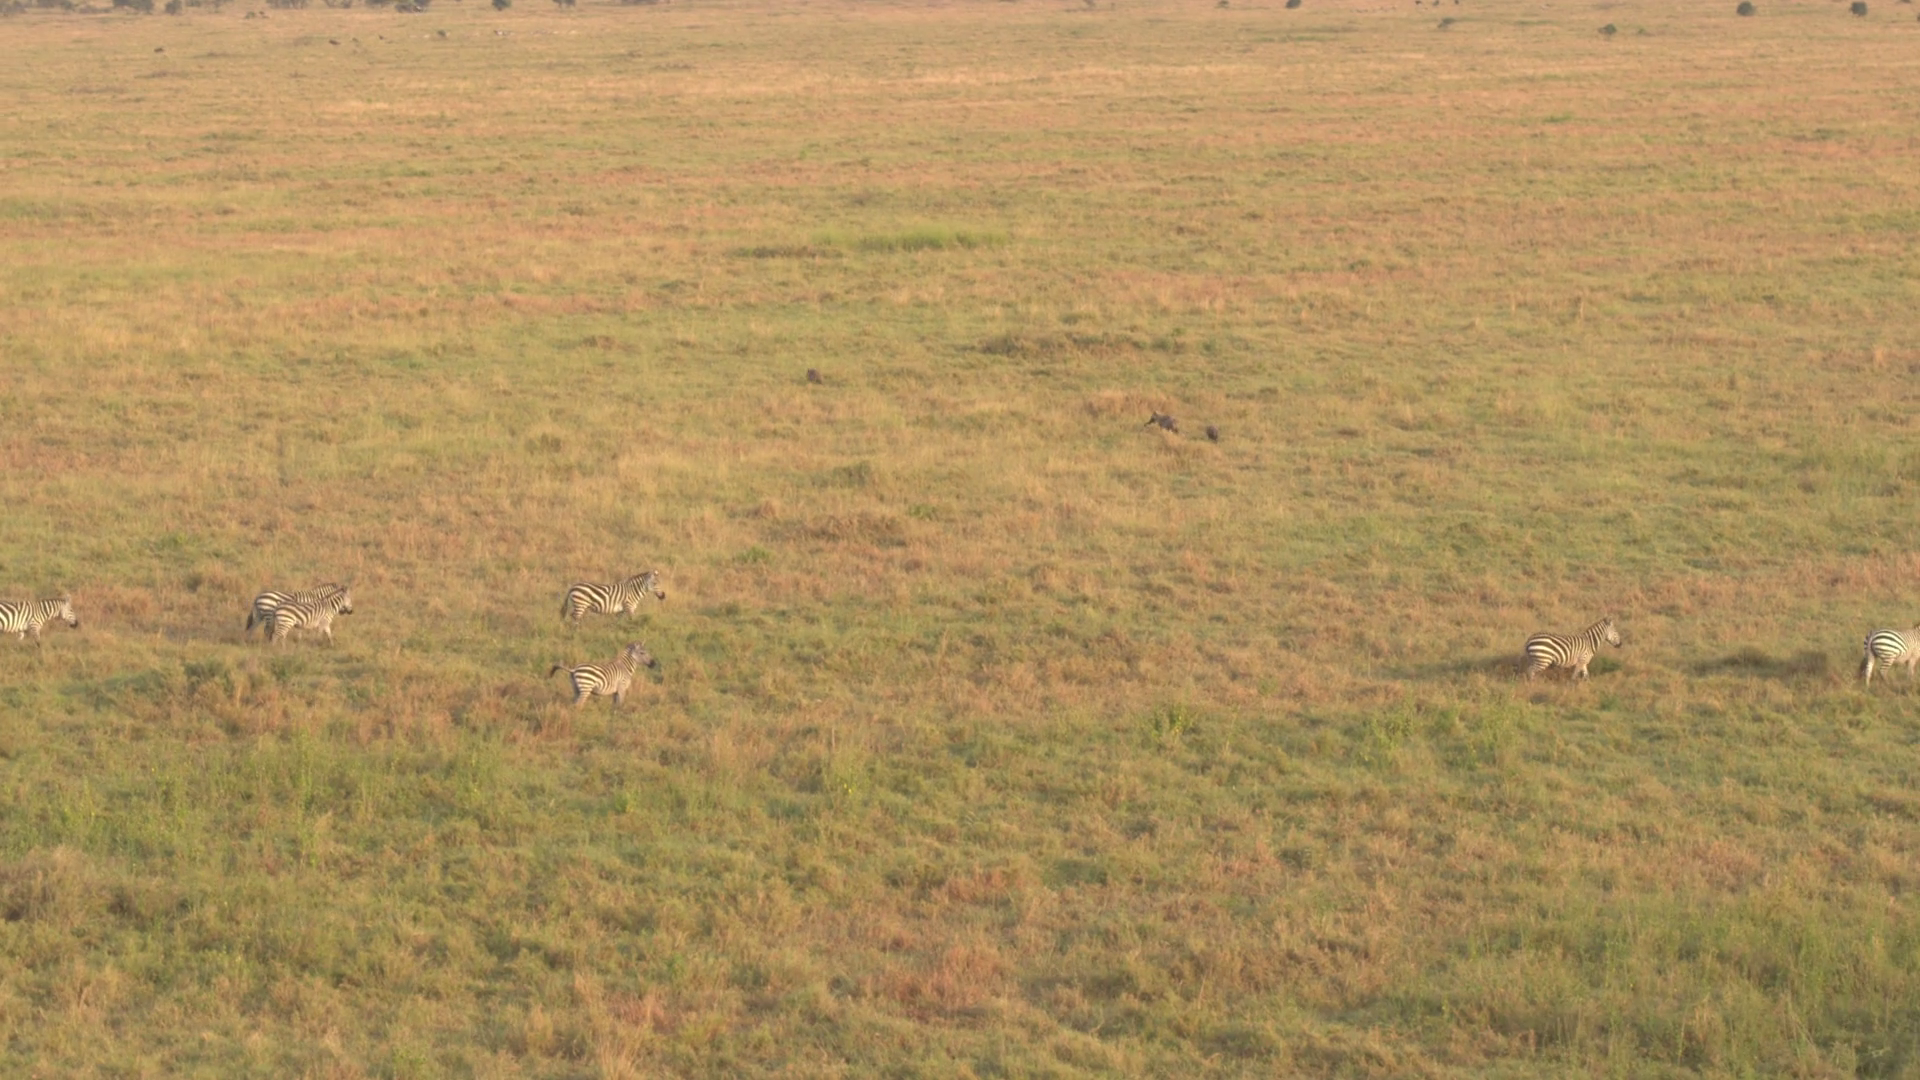 AERIAL: Wild zebras in big herd running in line across savanna field ...